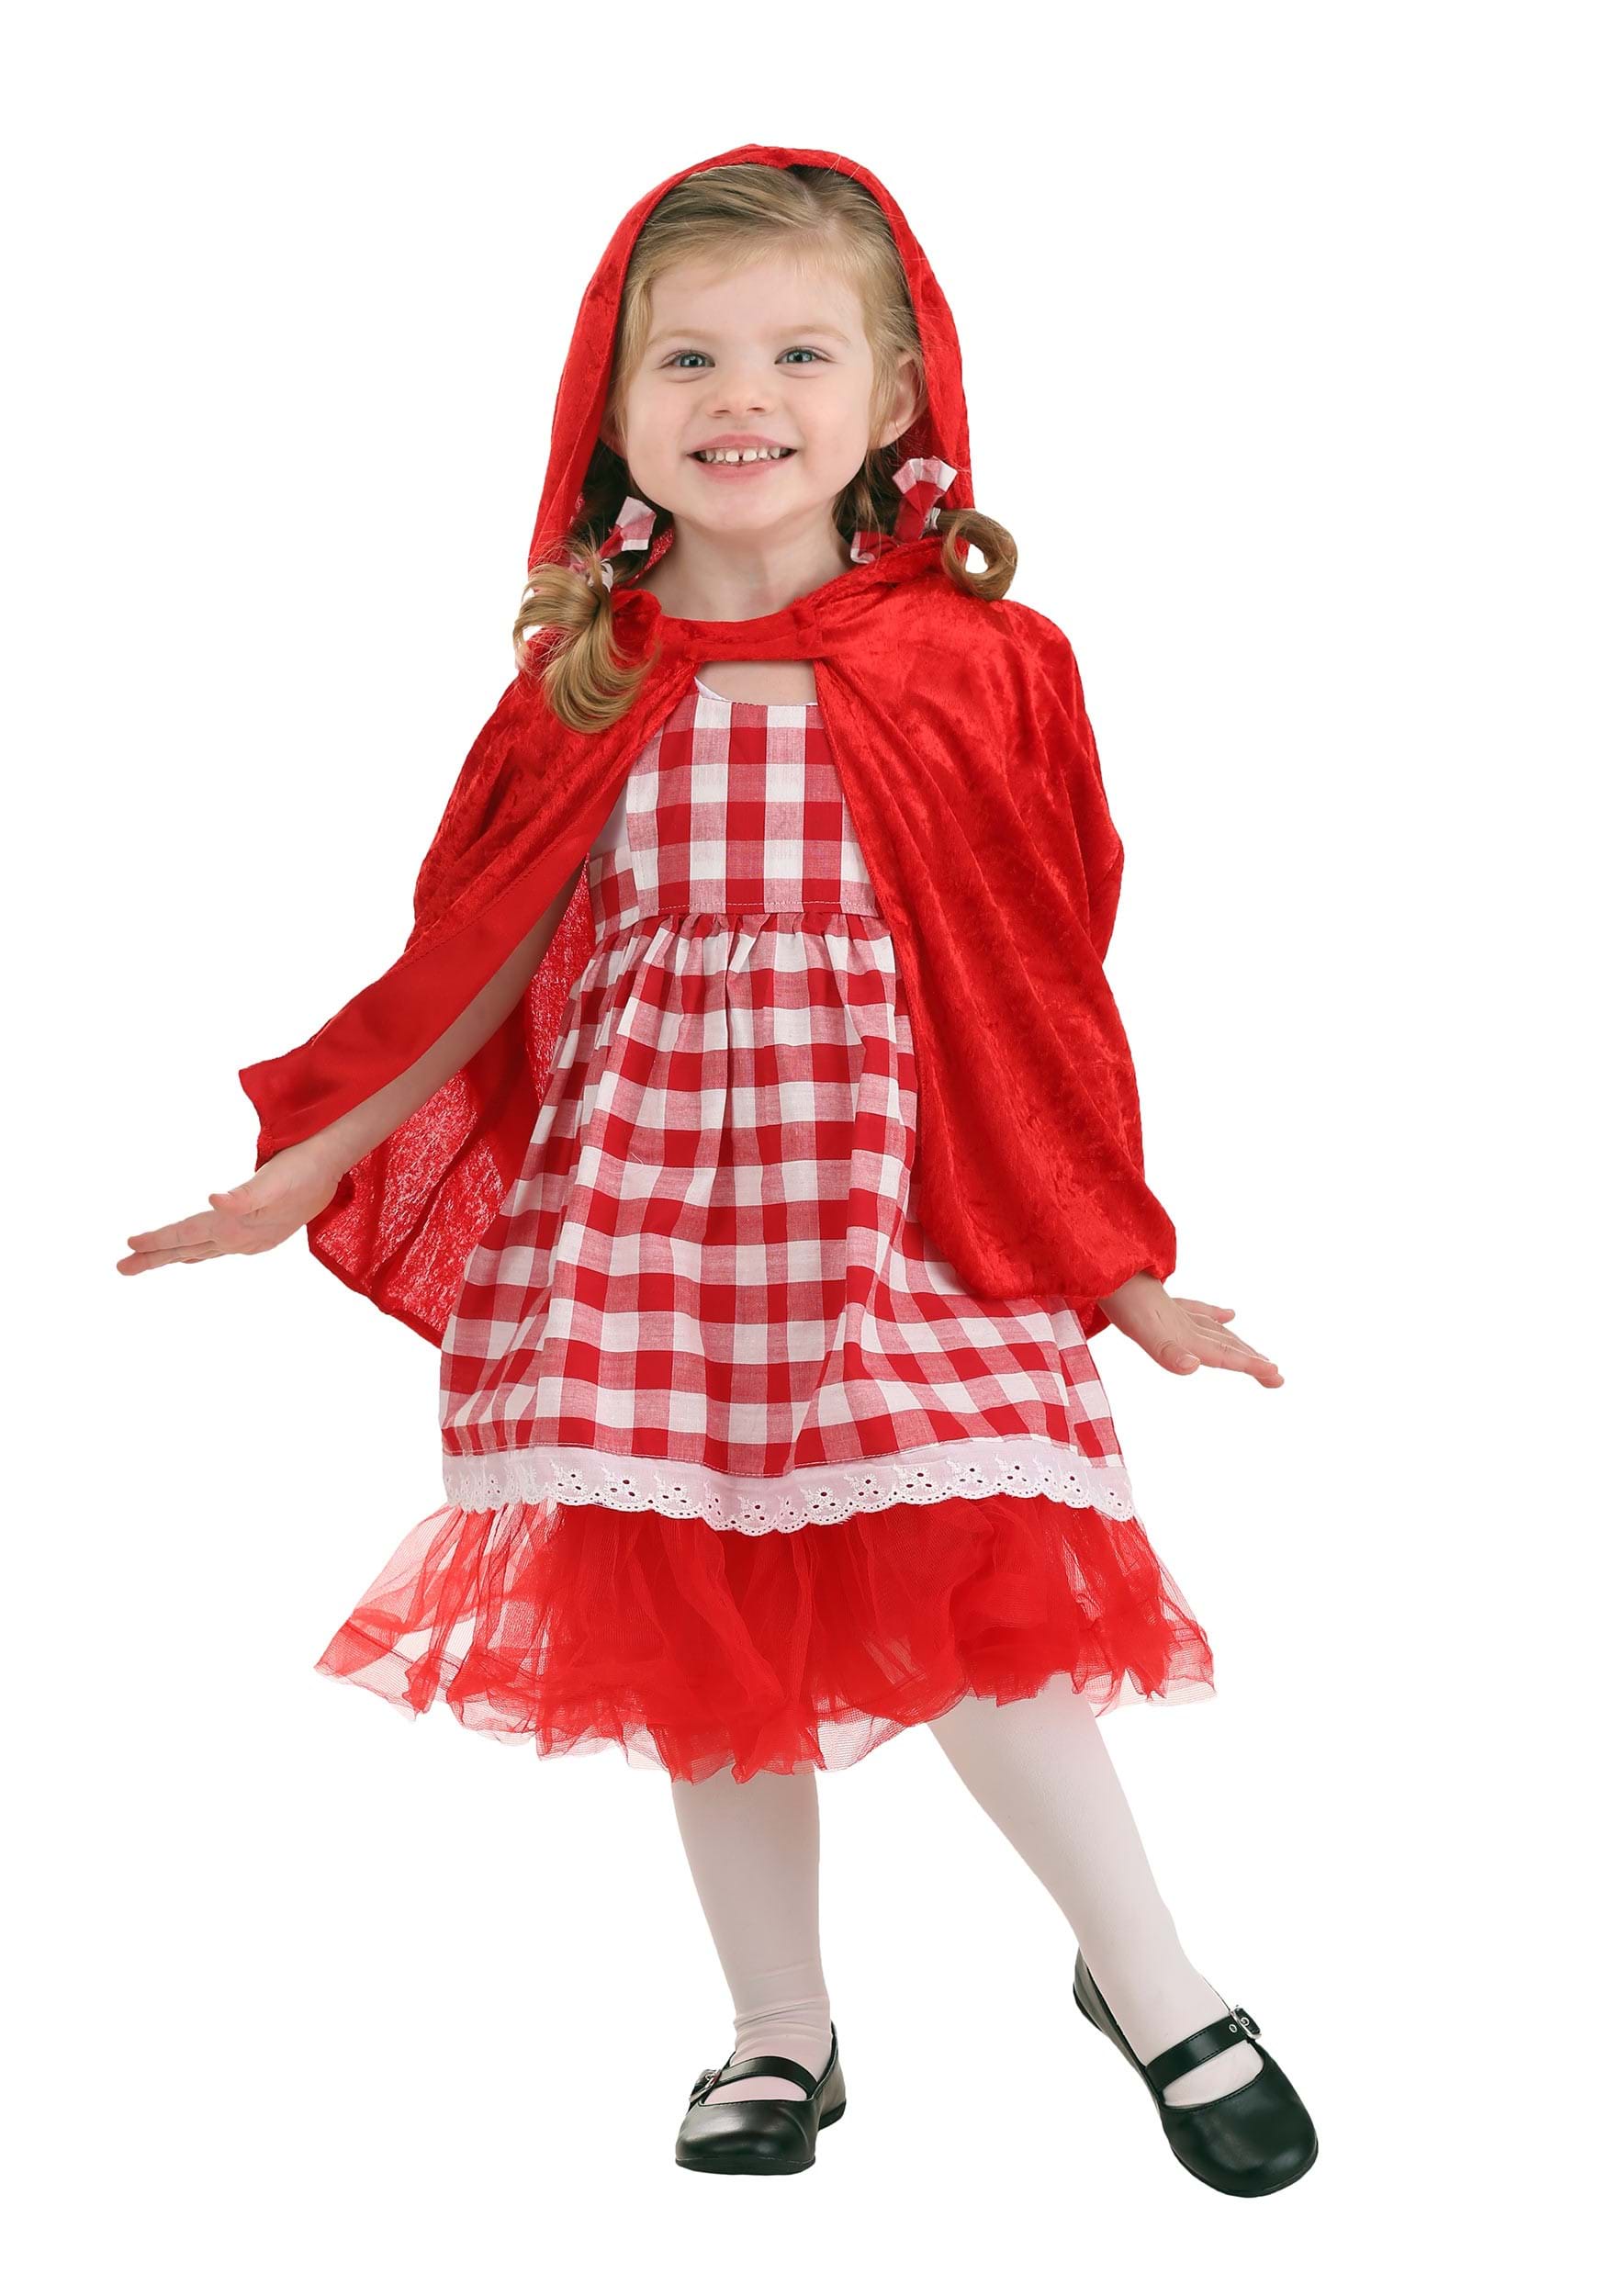 Toddler Red Riding Hood Tutu Girls Costume